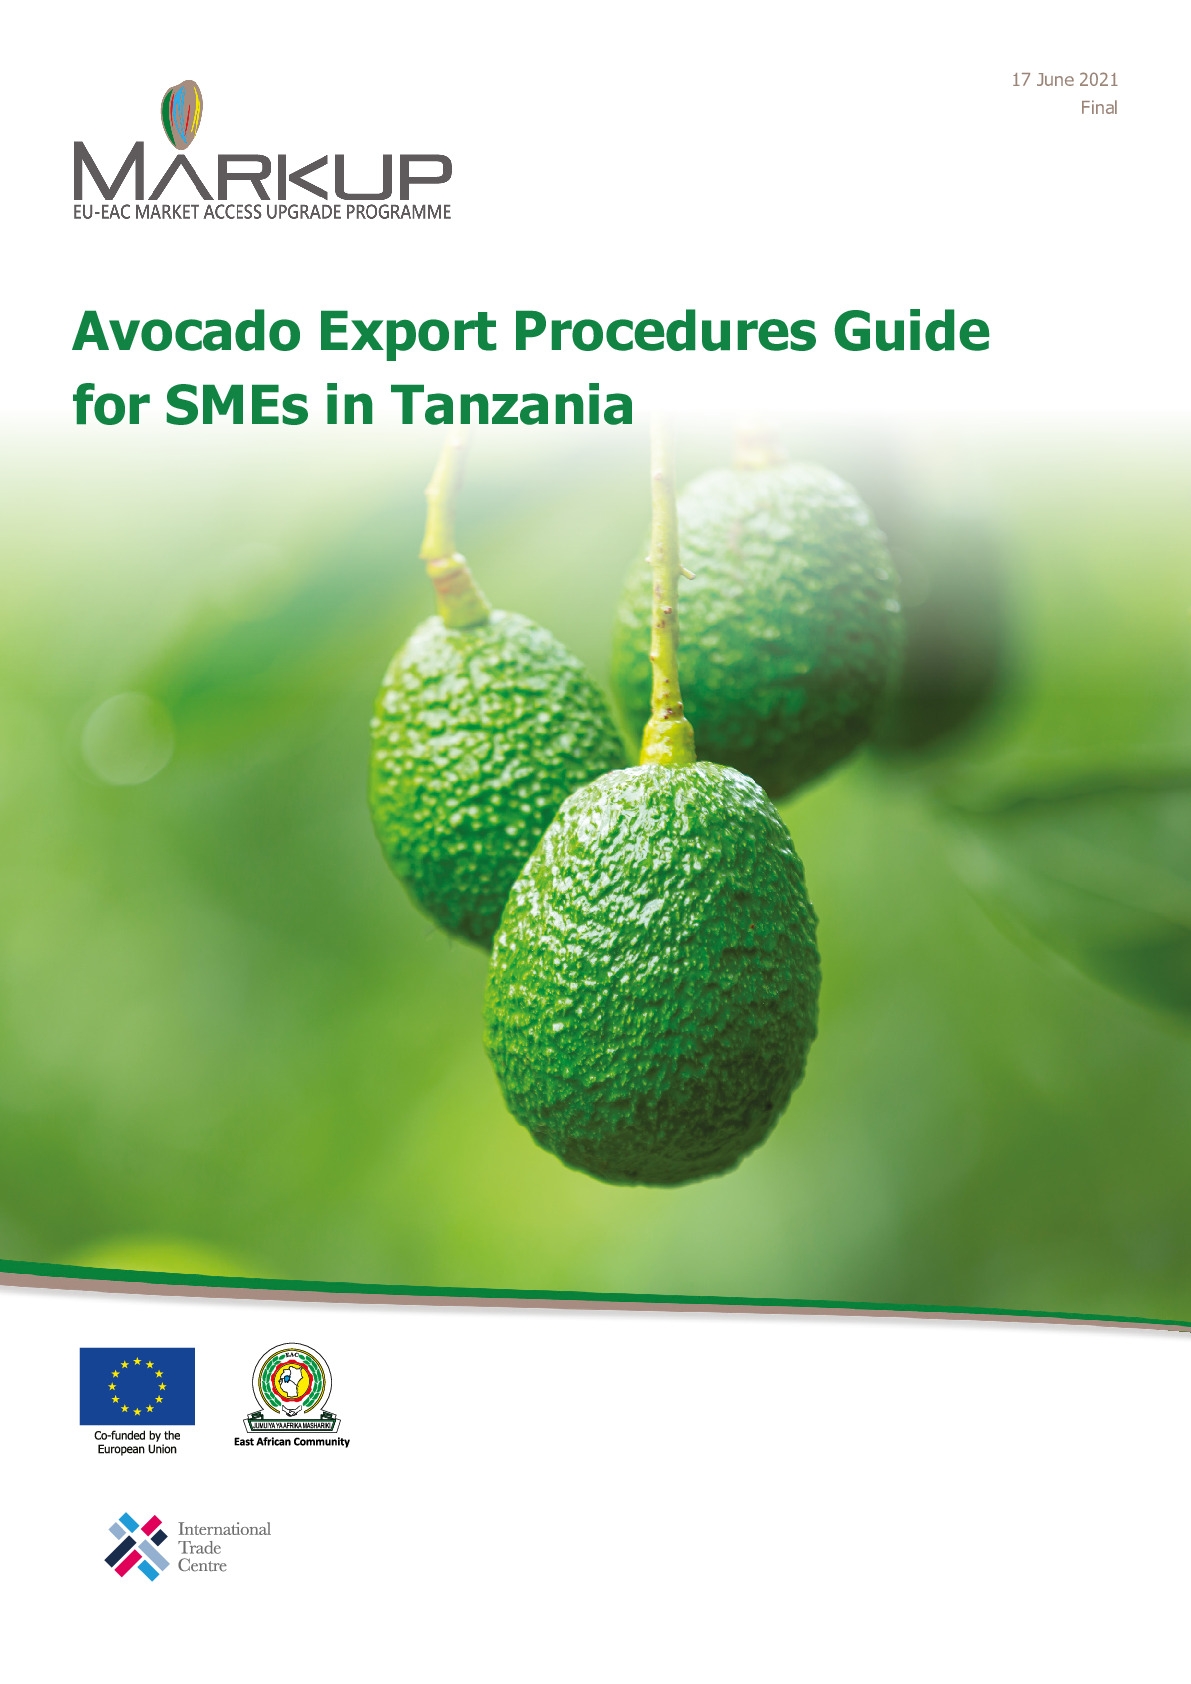 tanzania_-_avocado_export_procedures_guide